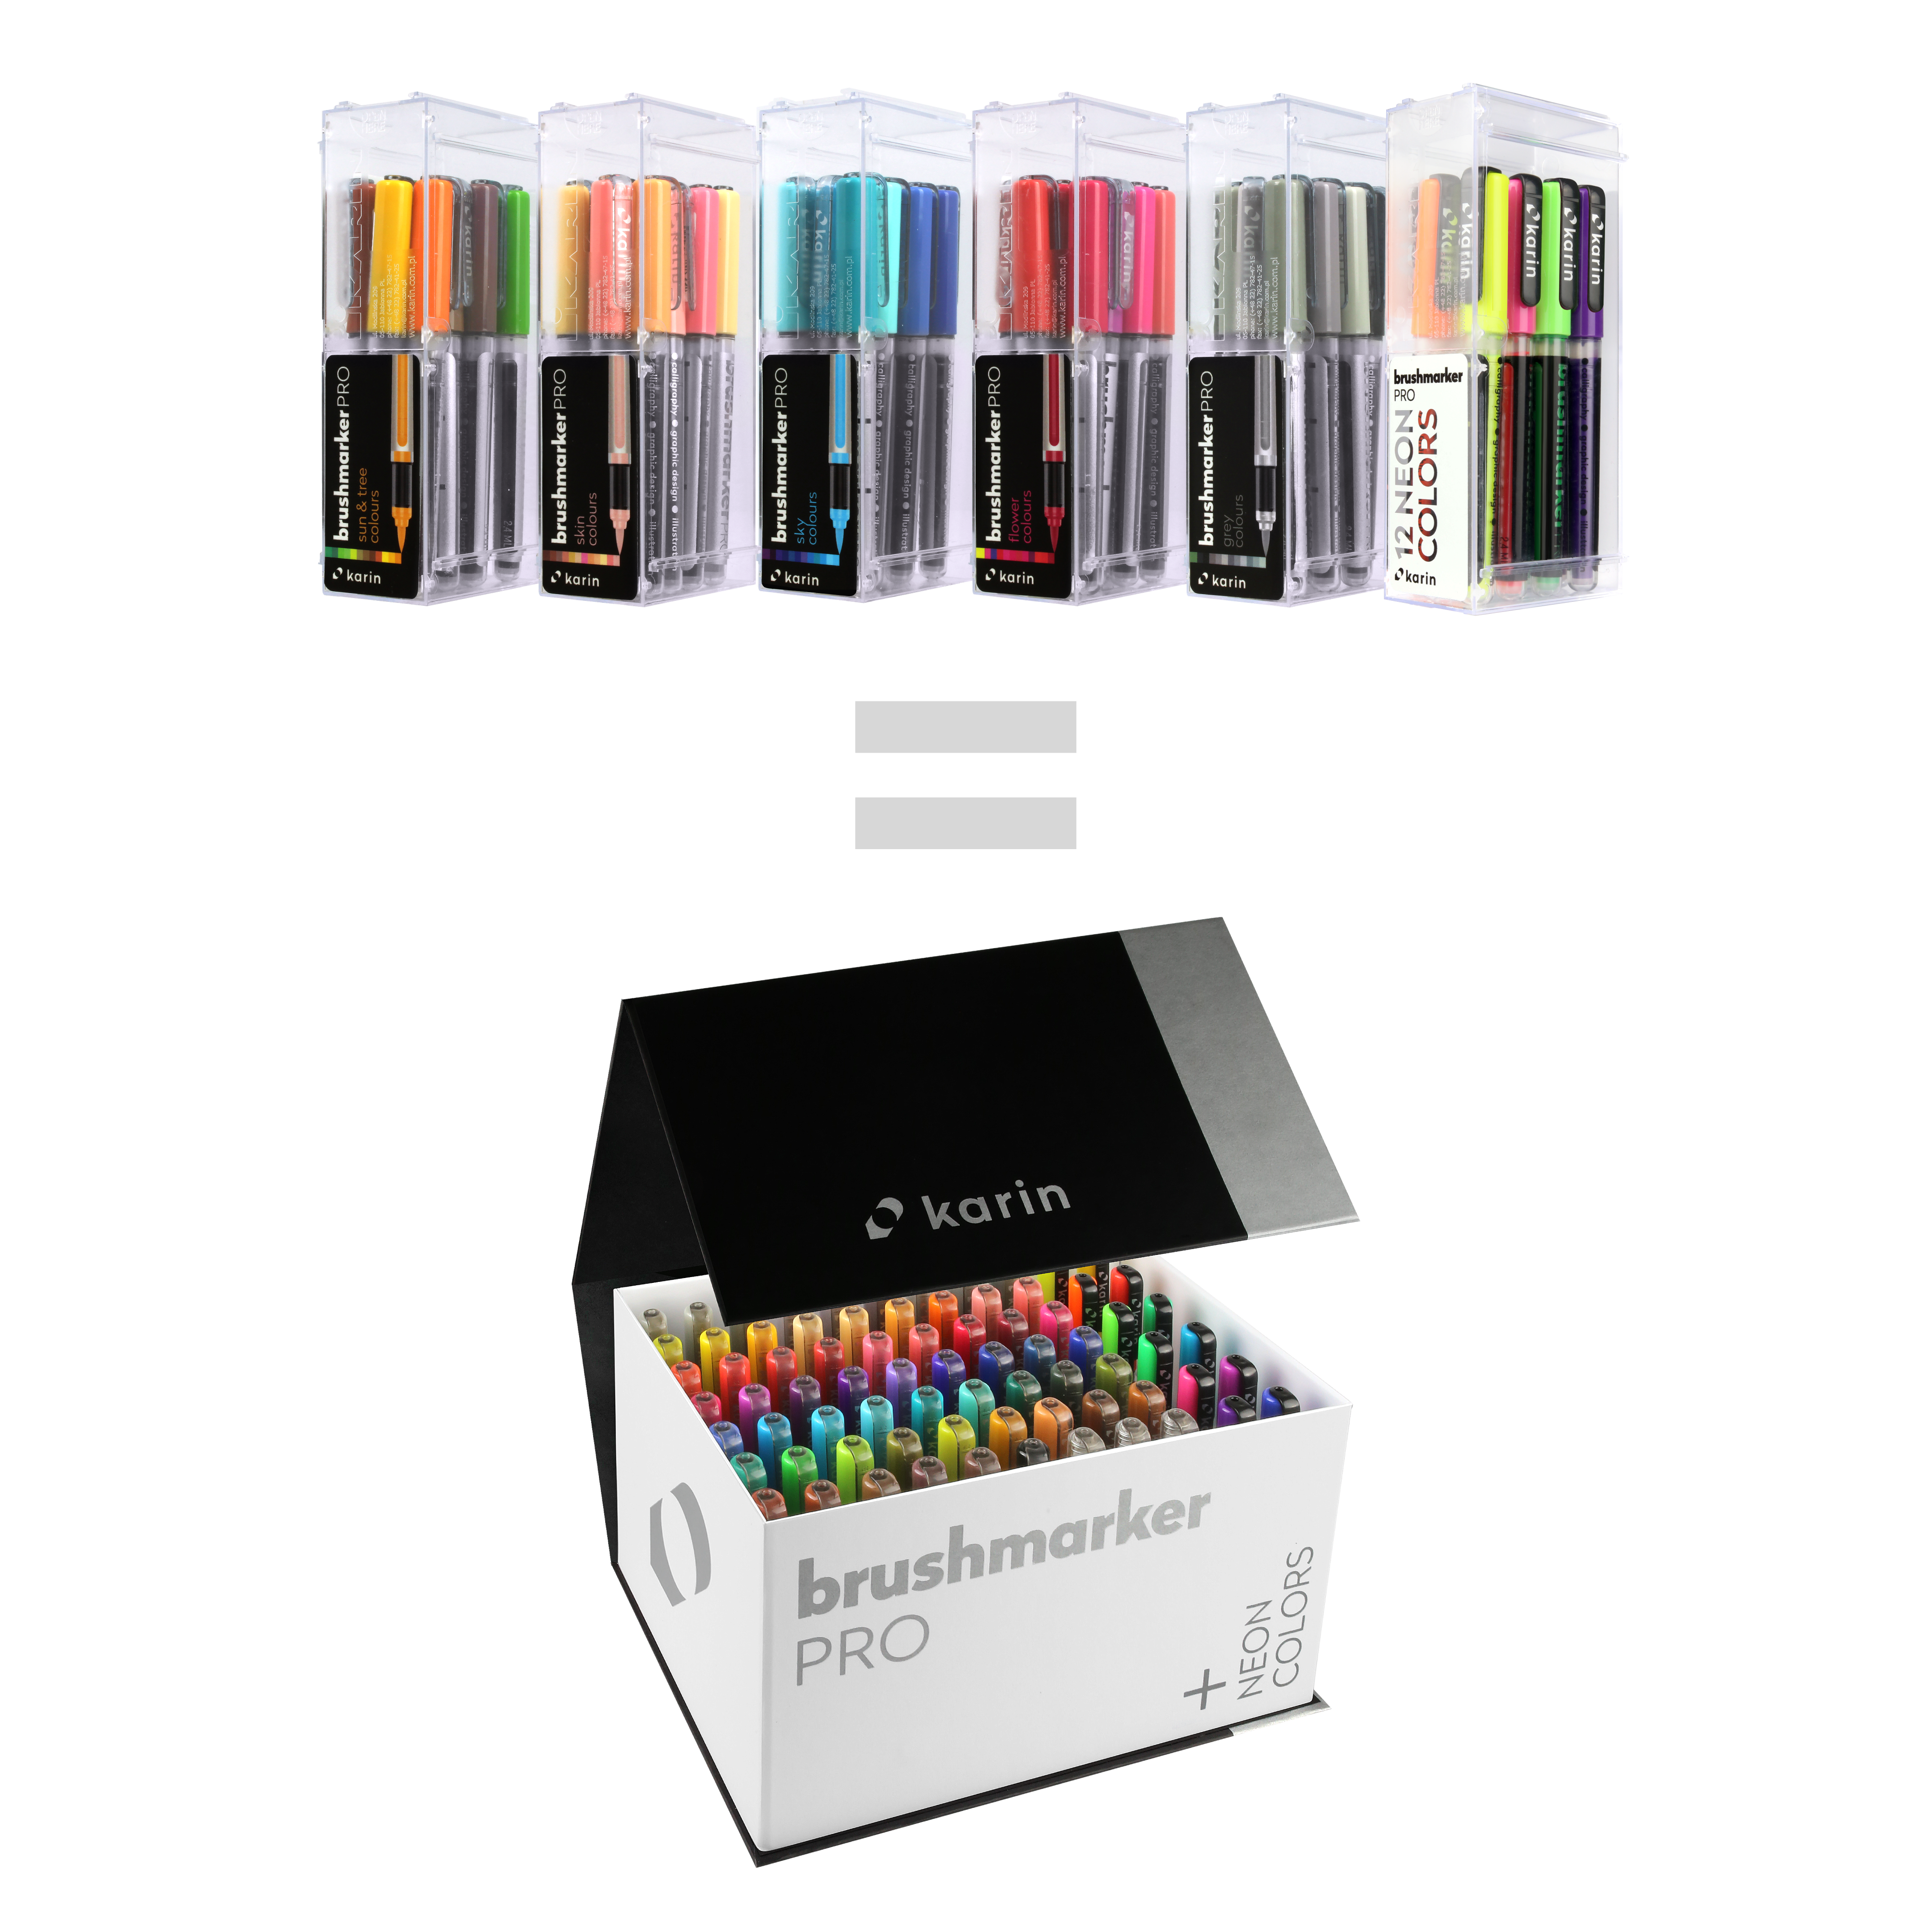 BrushmarkerPRO MegaBox PLUS - 72 colours + 3 blenders set - Paper Kooka